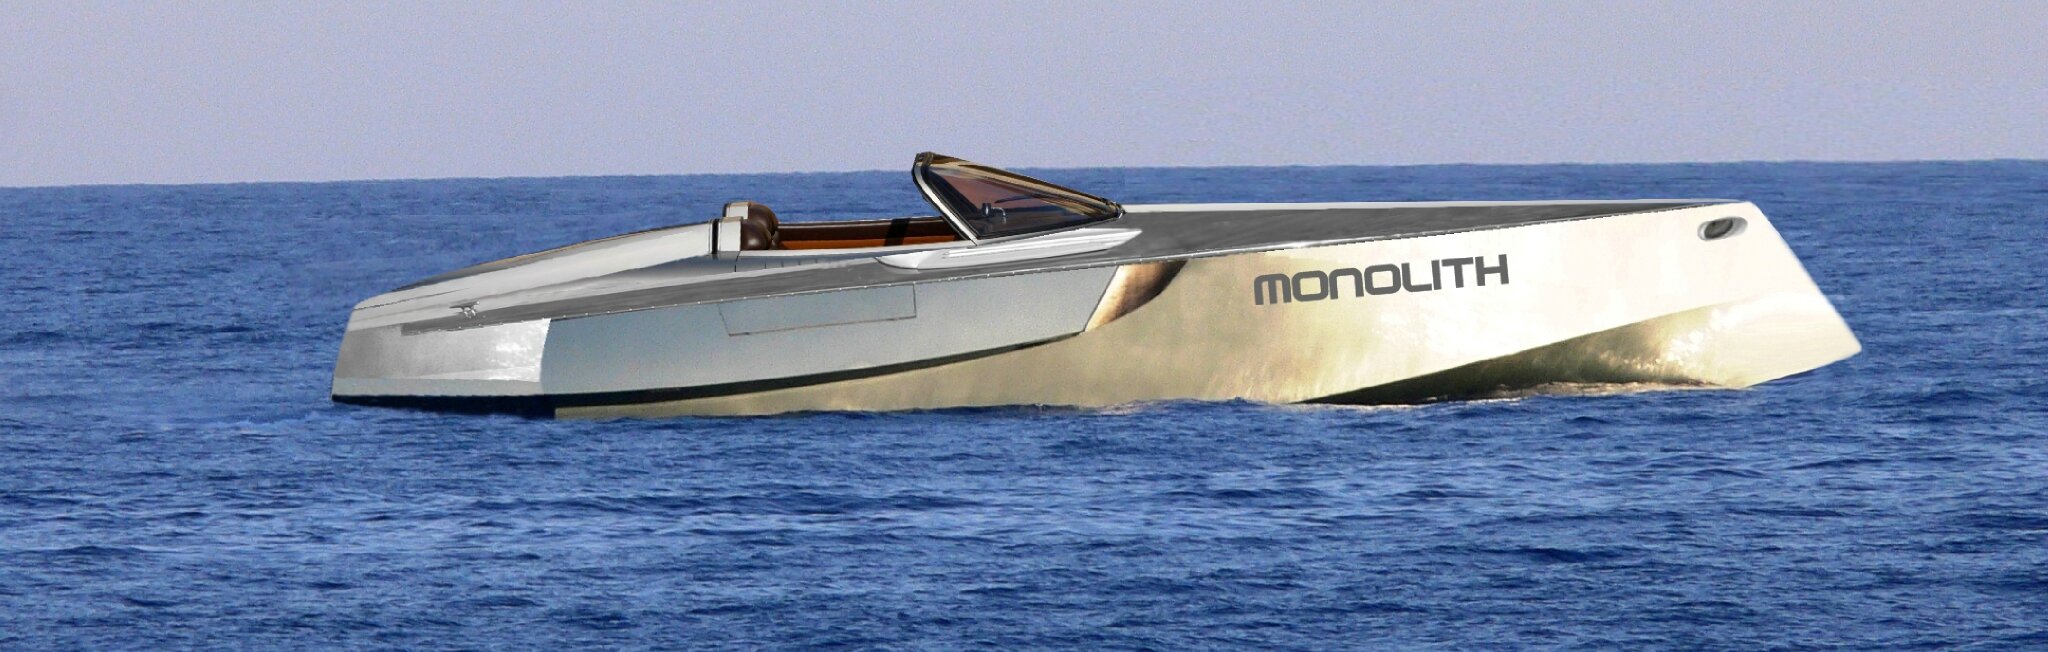 inboard monolith